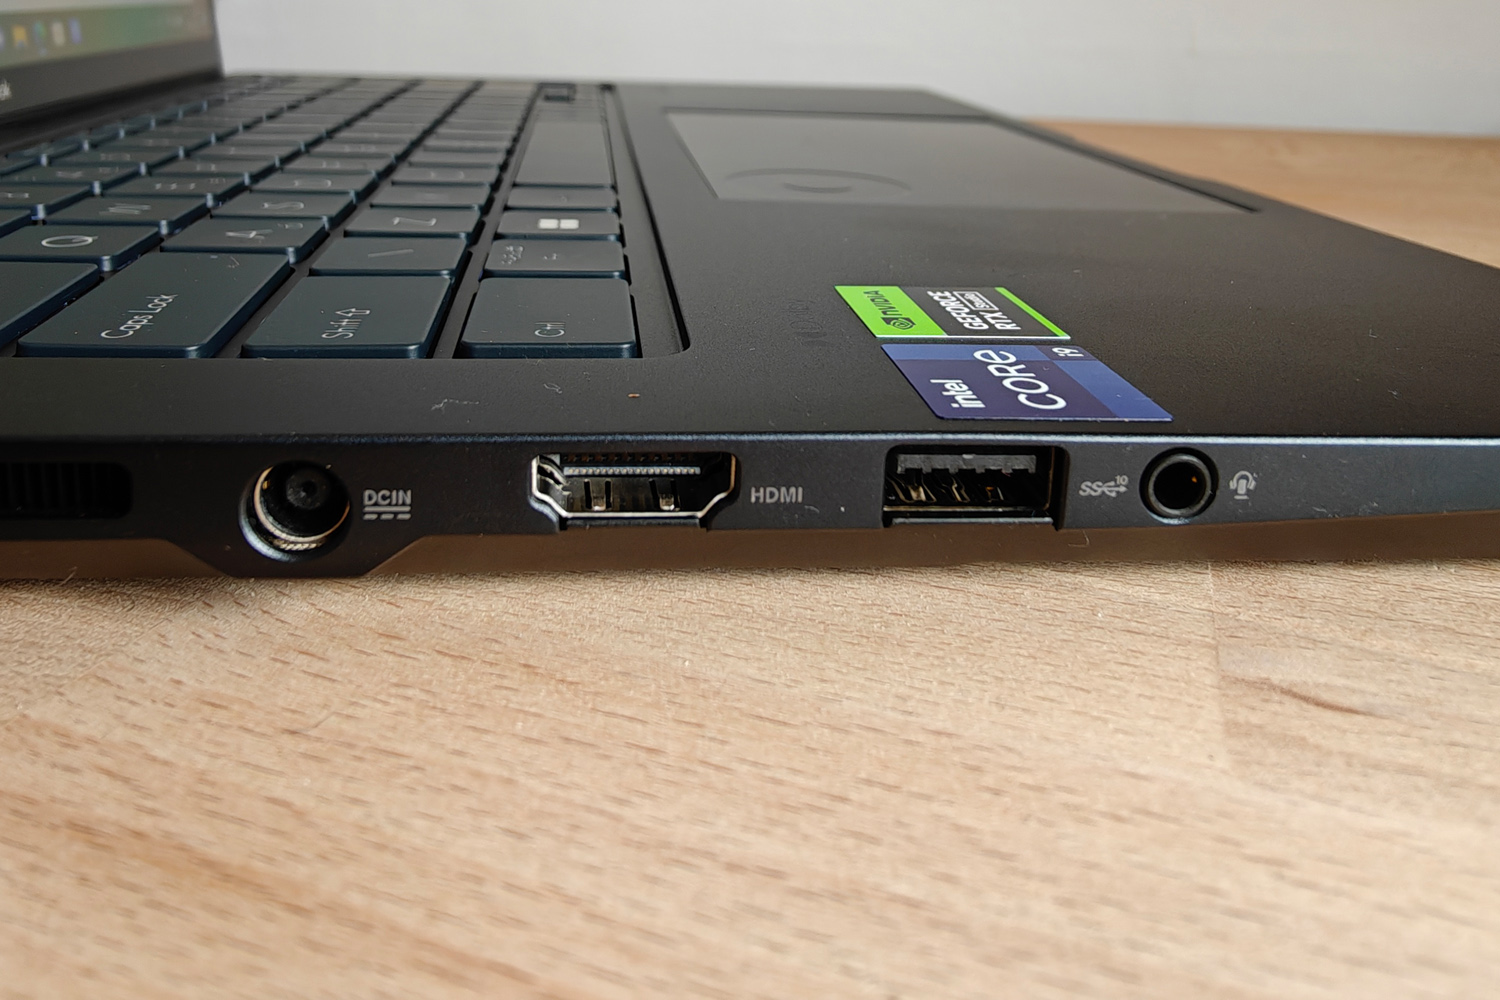 Asus Zenbook Pro 14 OLED ports left